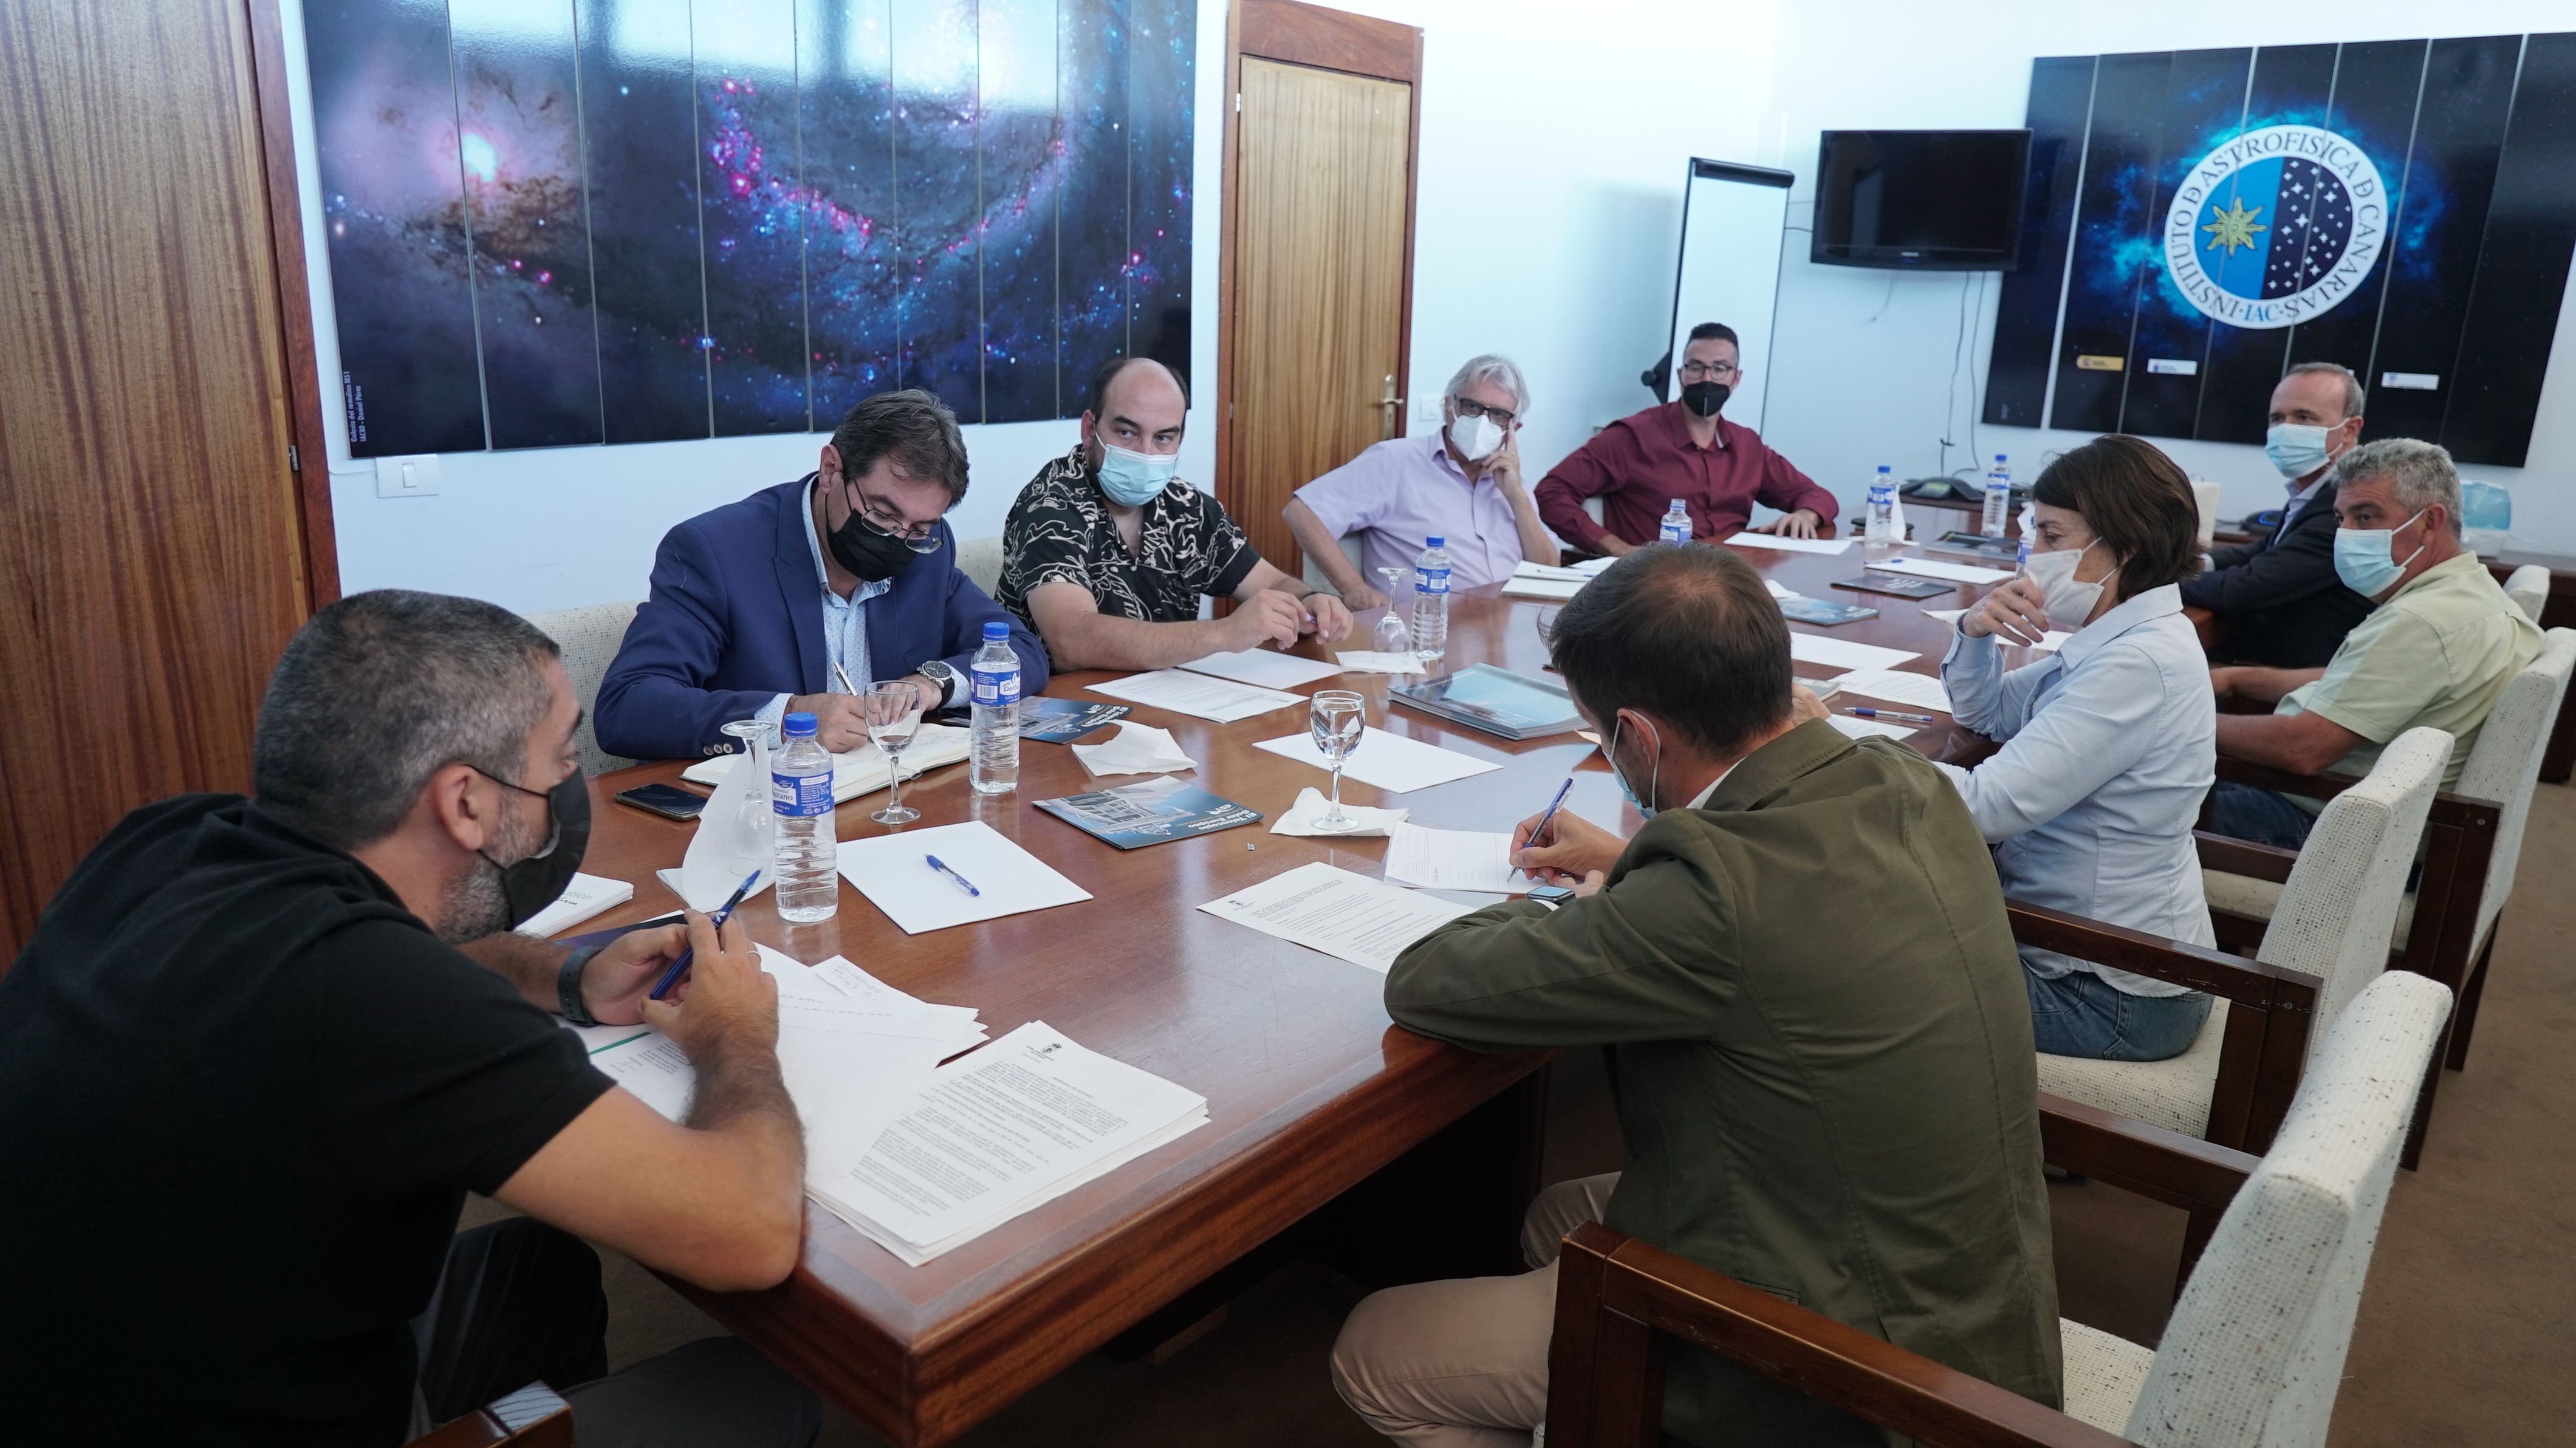 Reunión del Comité Rector en el Roque de los Muchachos. Crédito: Iván Jiménez (IAC)